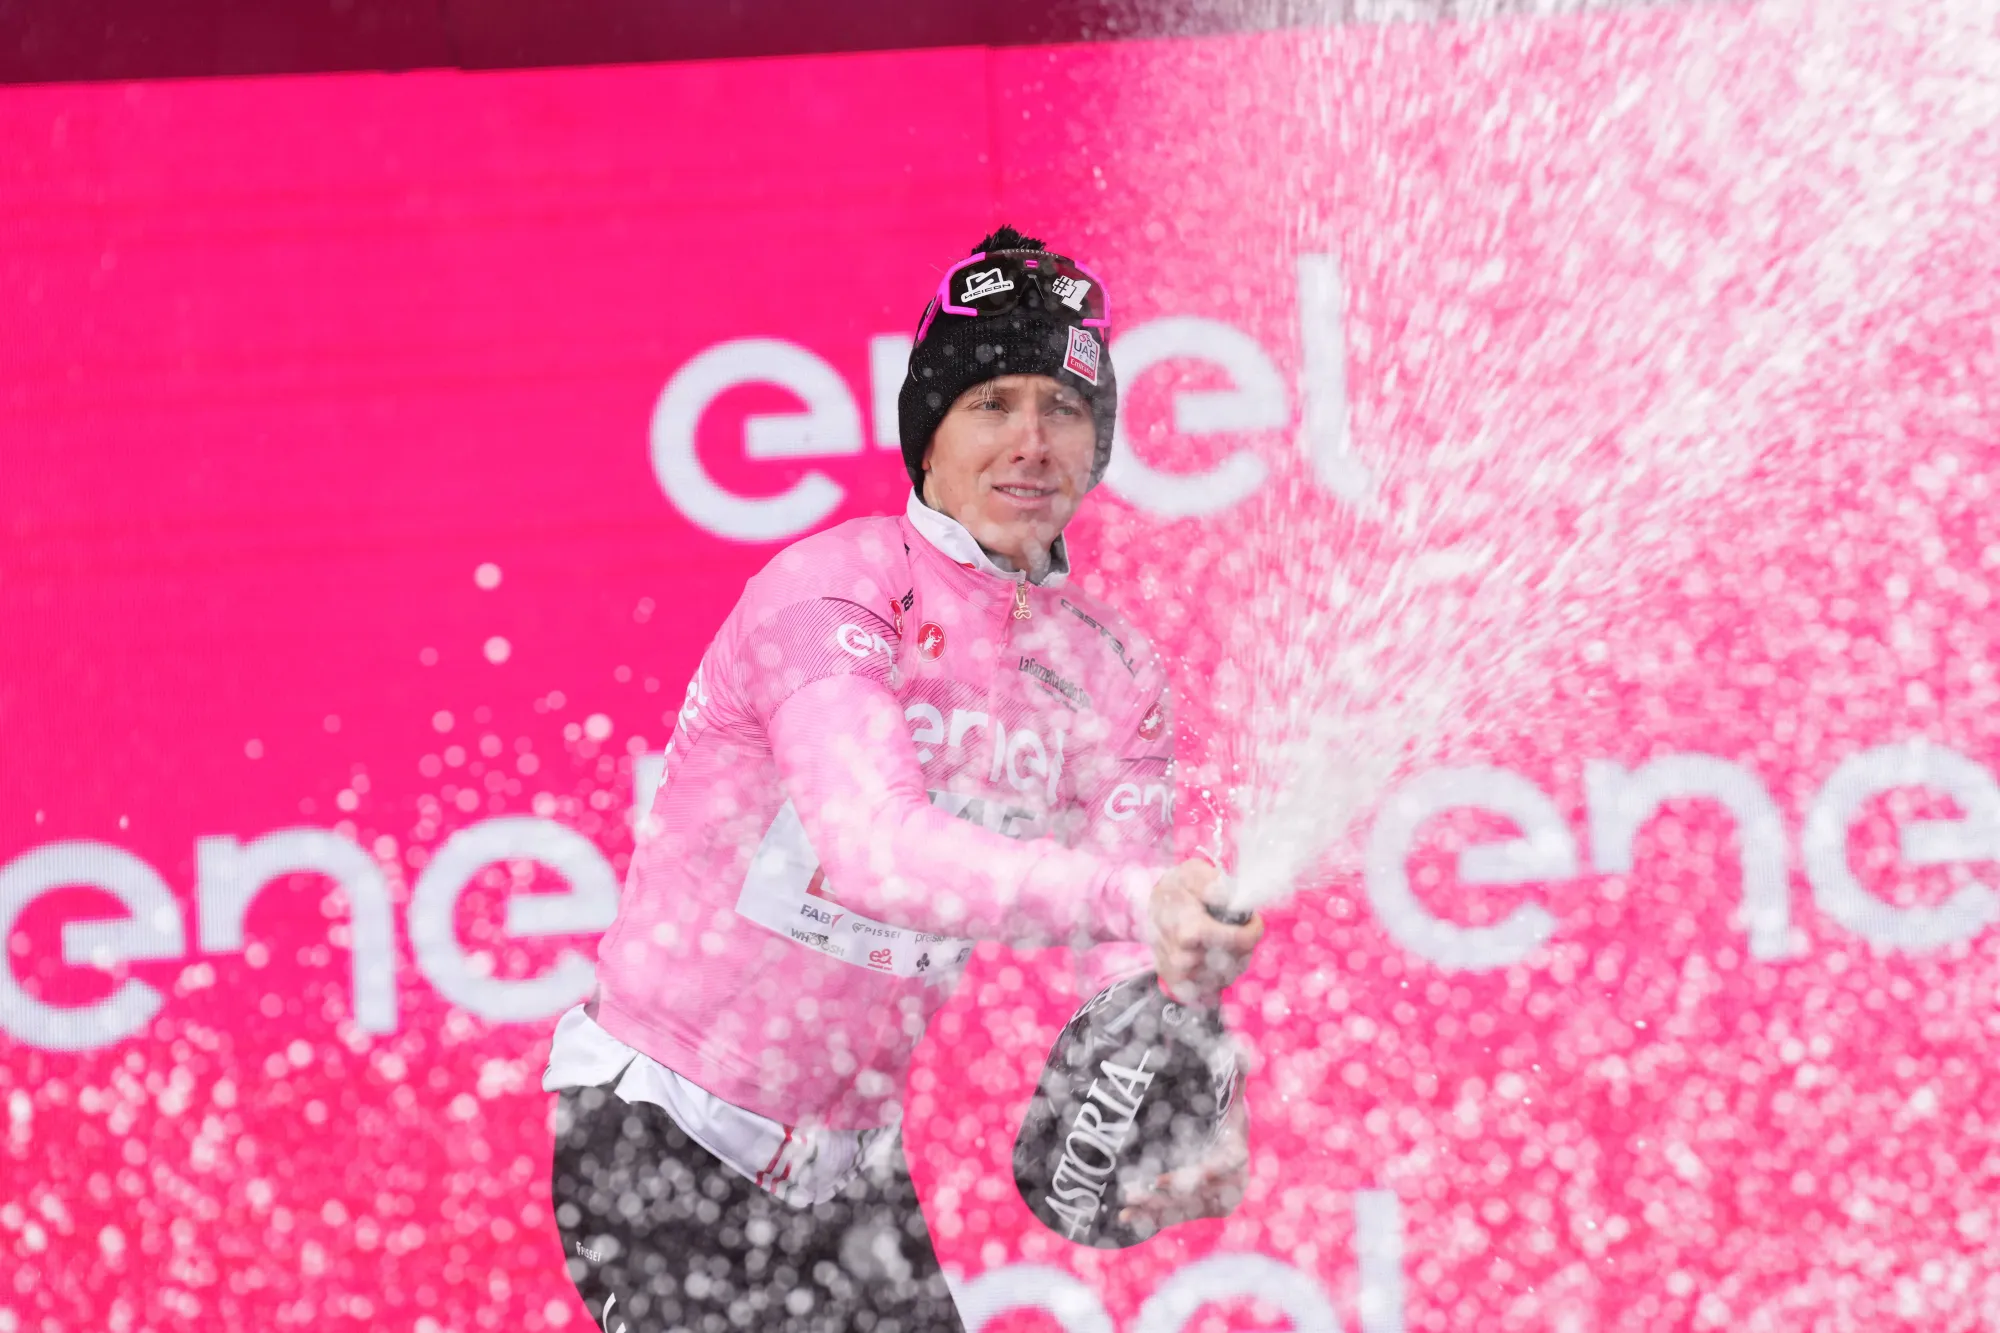 Andrea Vendrame vince la diciannovesima tappa del Giro d'Italia. Tadej Pogacar rimane in Maglia Rosa